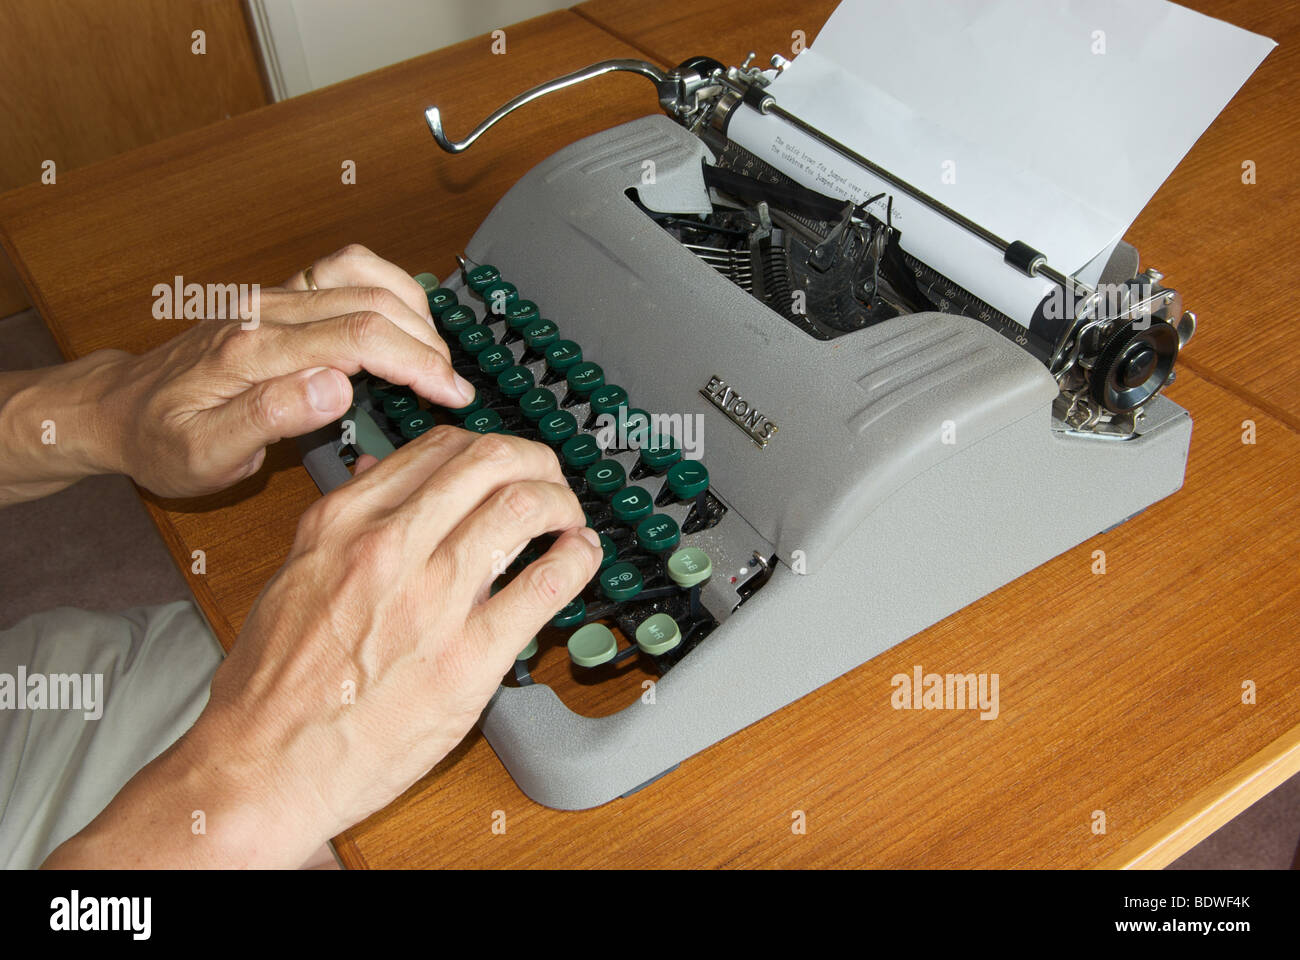 La tecnologia obsoleta manuale macchina da scrivere portatile dita digitando sulla tastiera per attivare meccanicamente scioperi lettera su carta Foto Stock